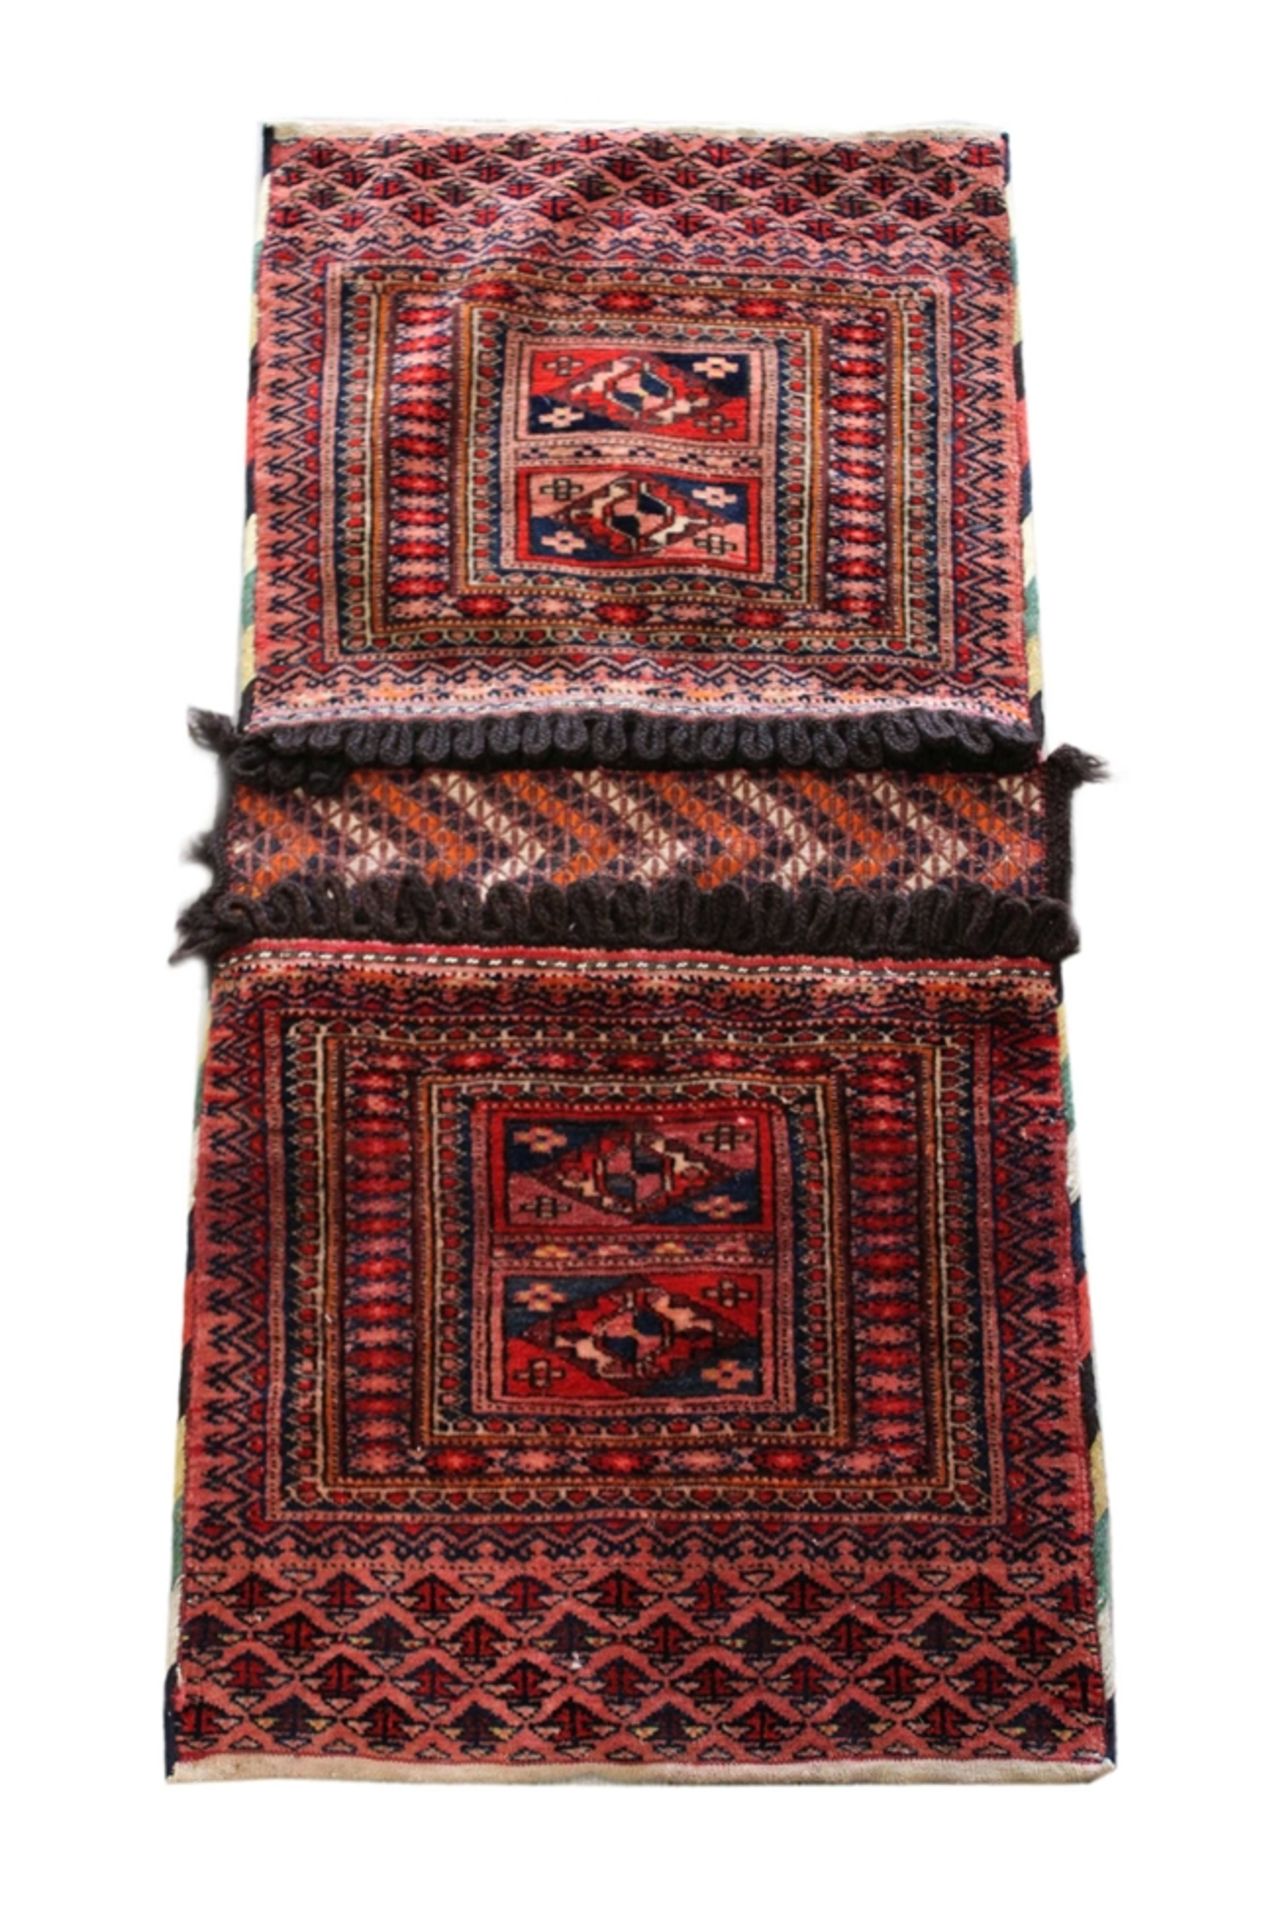 Teppich und Satteltasche, Satteltasche: Wolle a. Wolle, ca. 80 Jahre alt. Maße: 90 x 43 cm. Altersb - Image 3 of 4